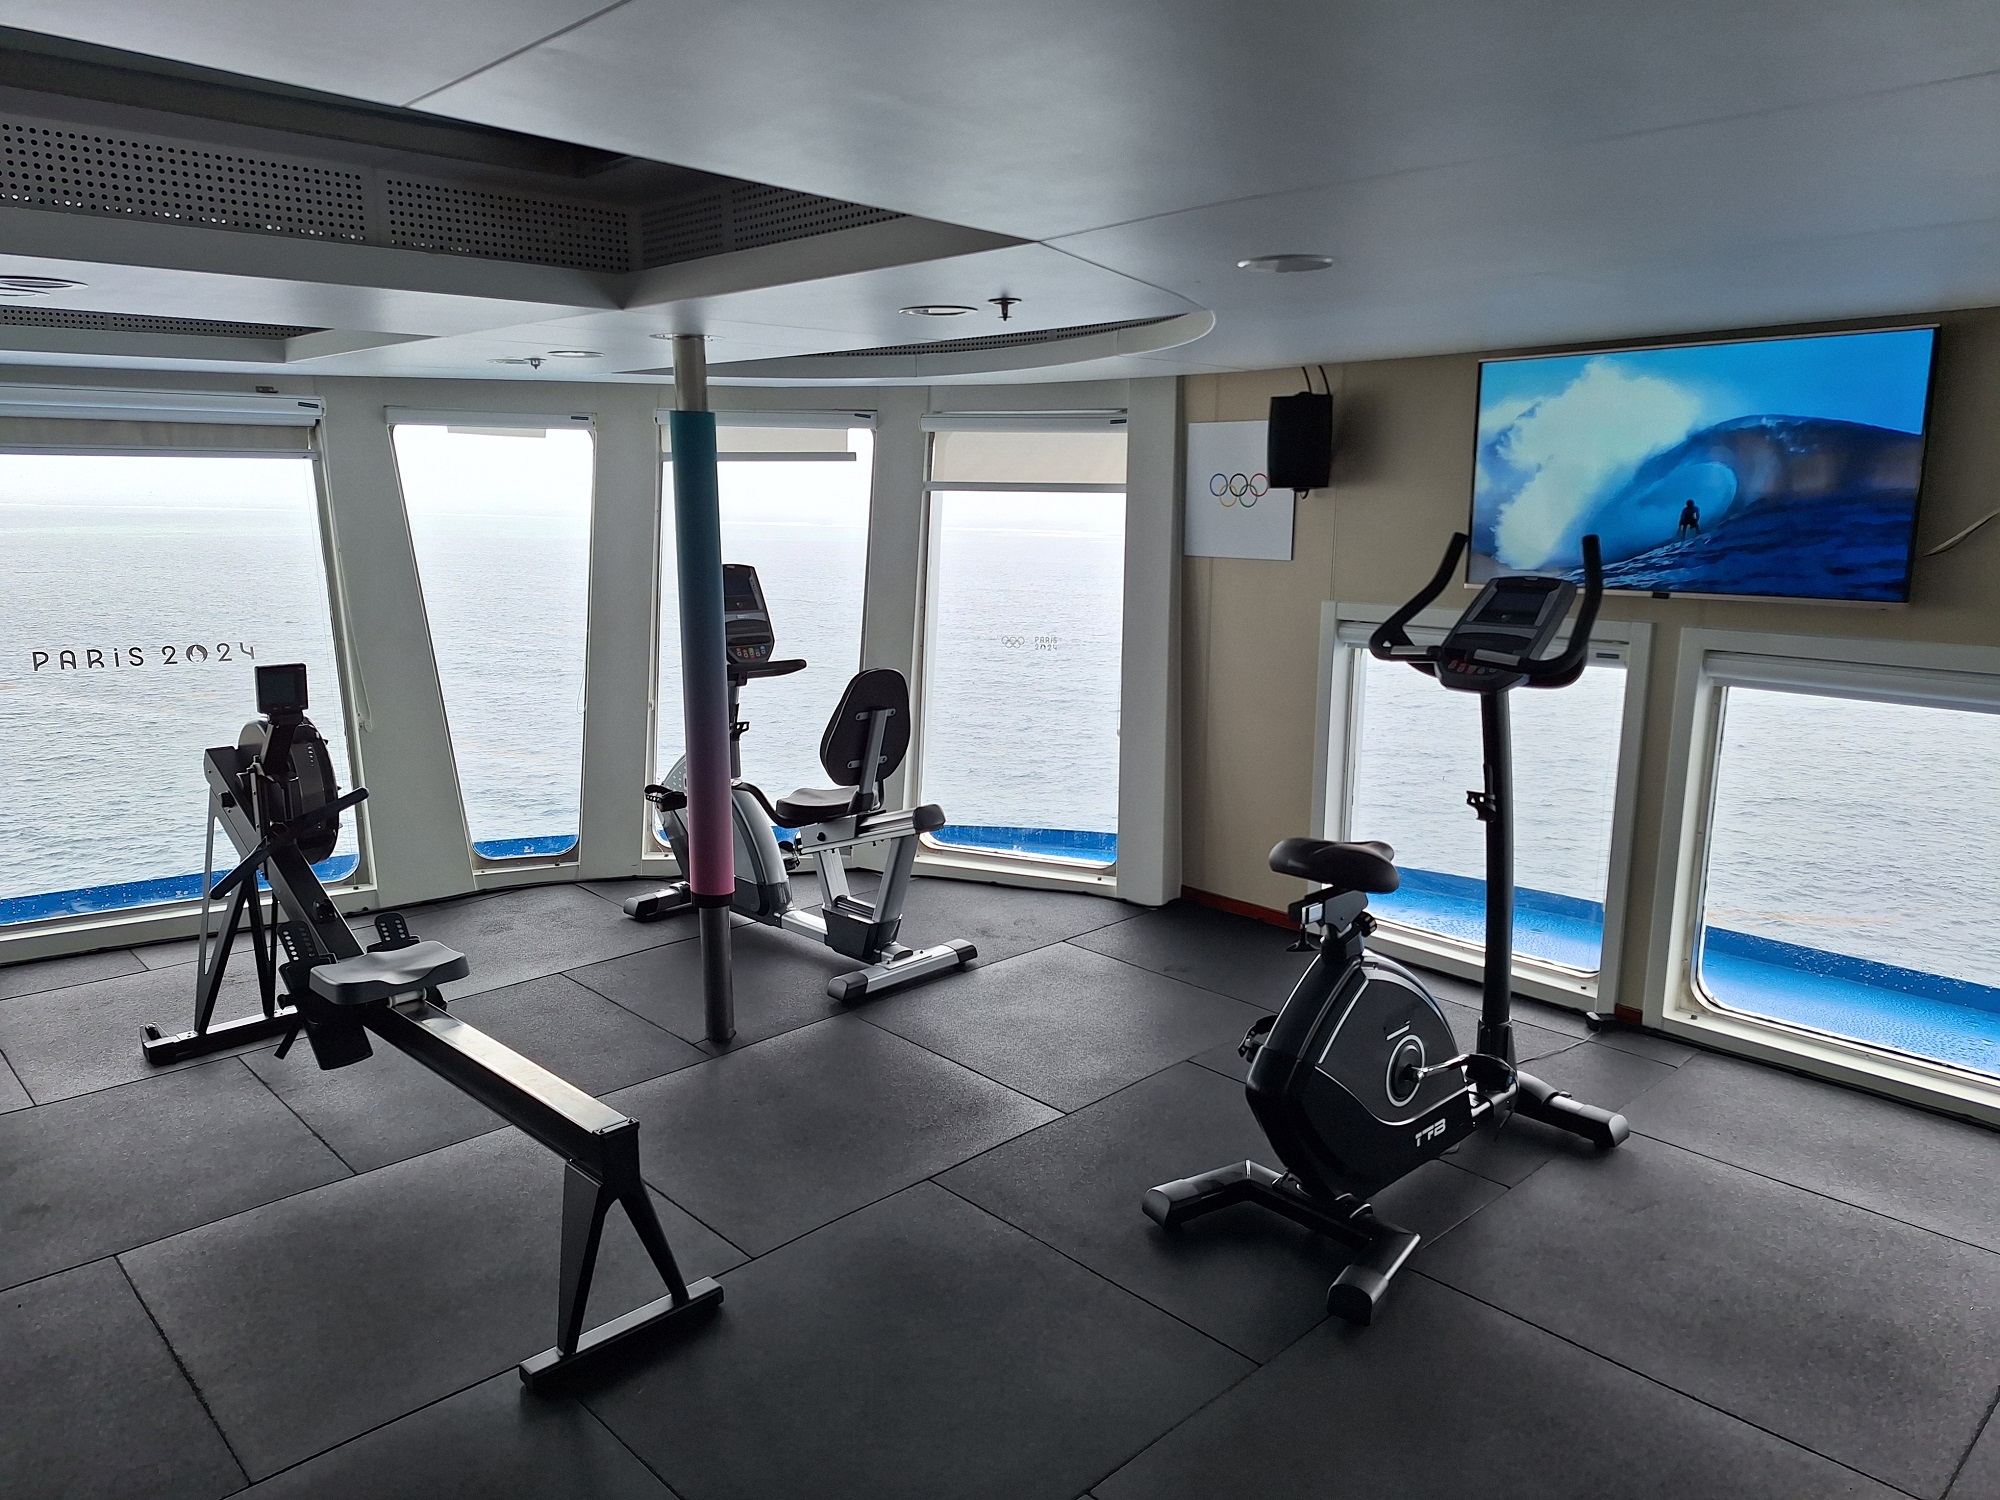 Le bar panoramique a été transformé en fitness center.